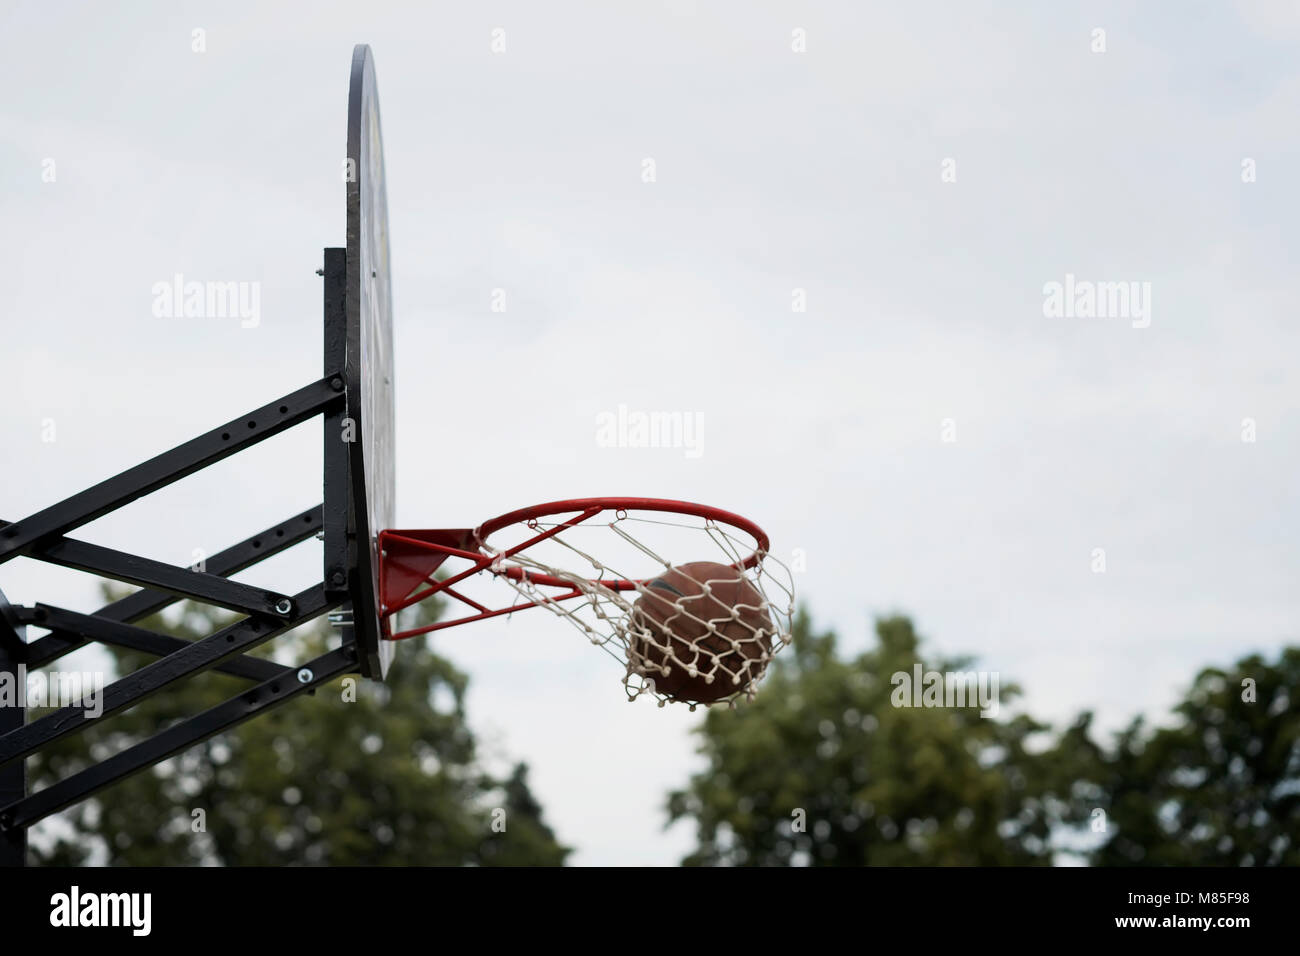 Street basketball game. Basketball shield, ball going through basket Stock  Photo - Alamy